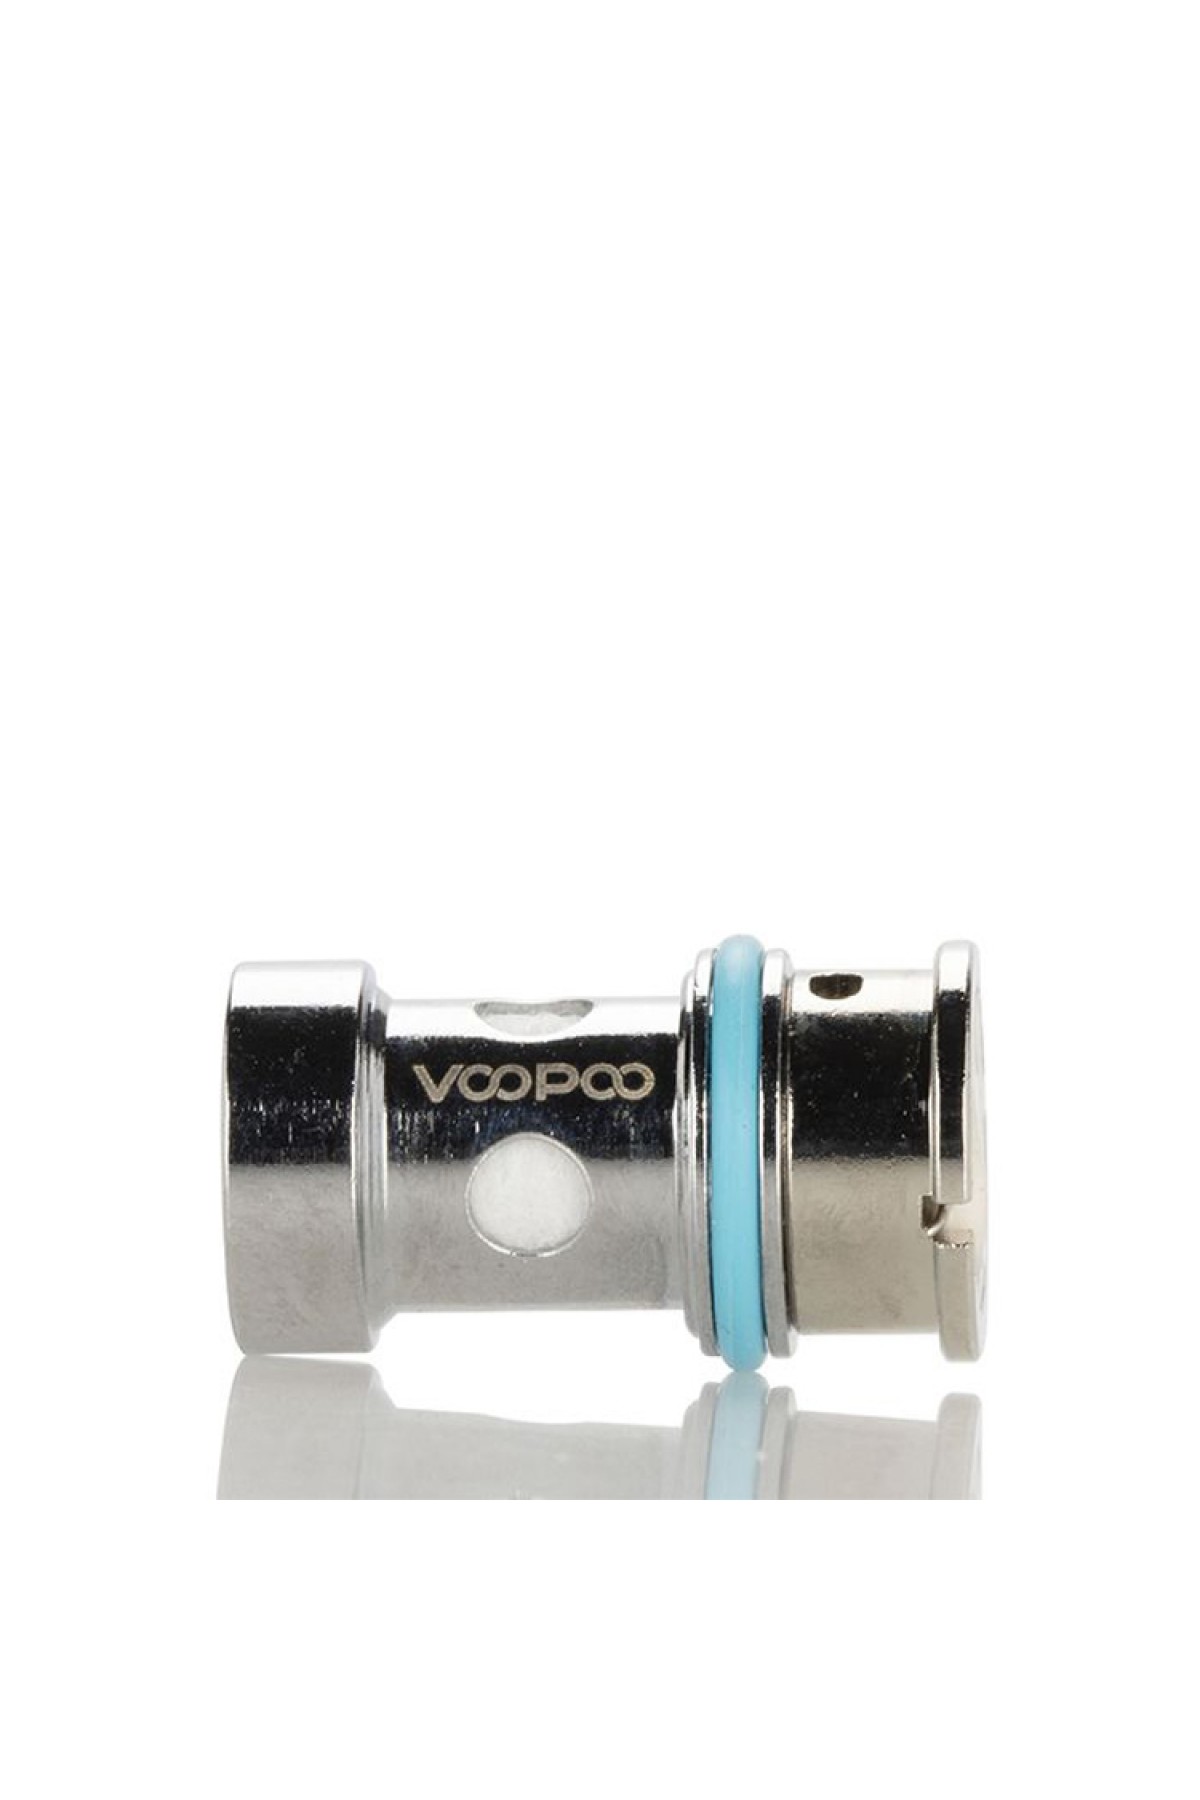 VOOPOO V.SUIT 40W Starter Kit